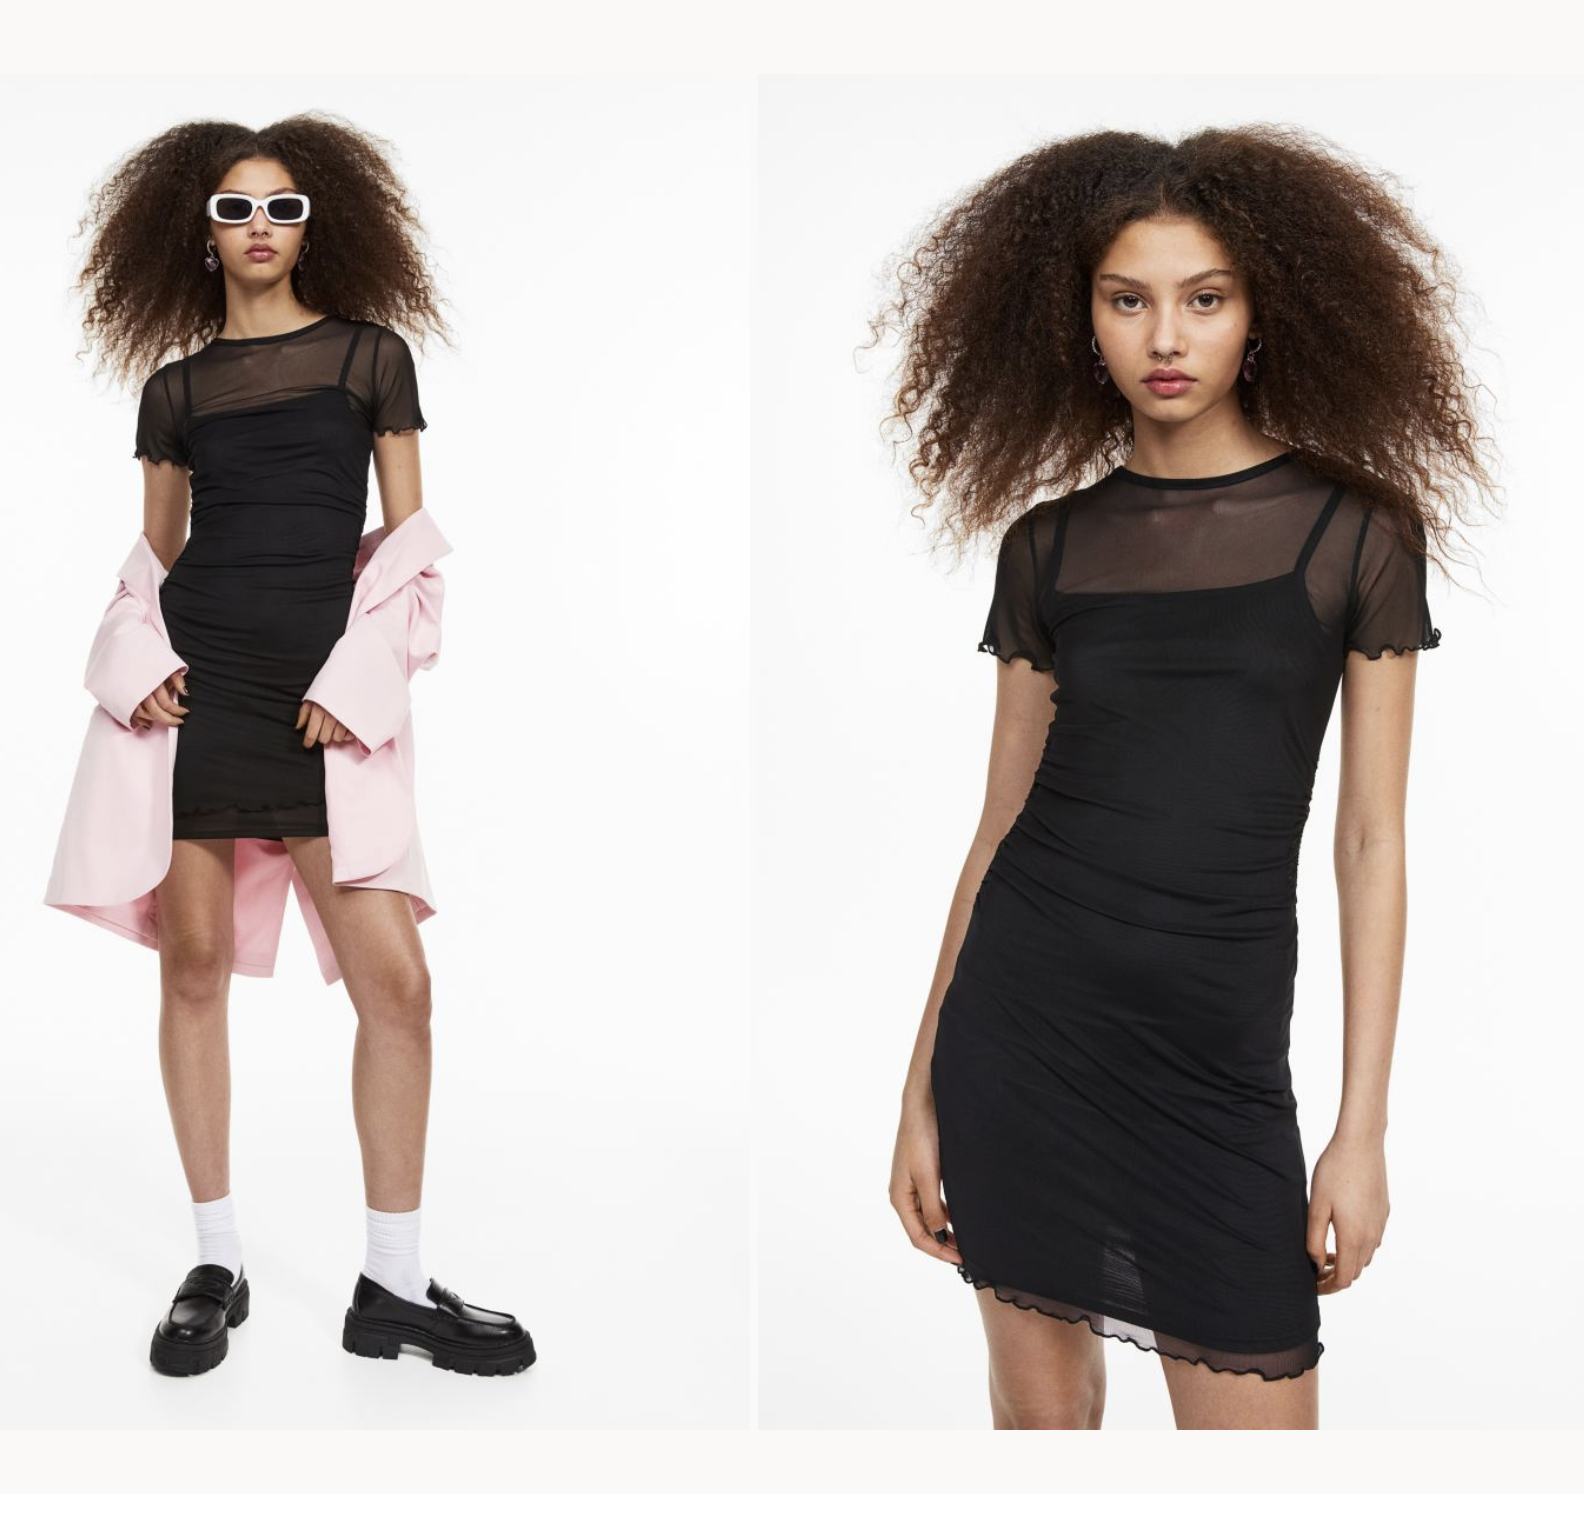 10 mẫu váy liền xinh yêu lại dưới 500.000 VNĐ bạn có thể mua được ở H&M - Ảnh 8.